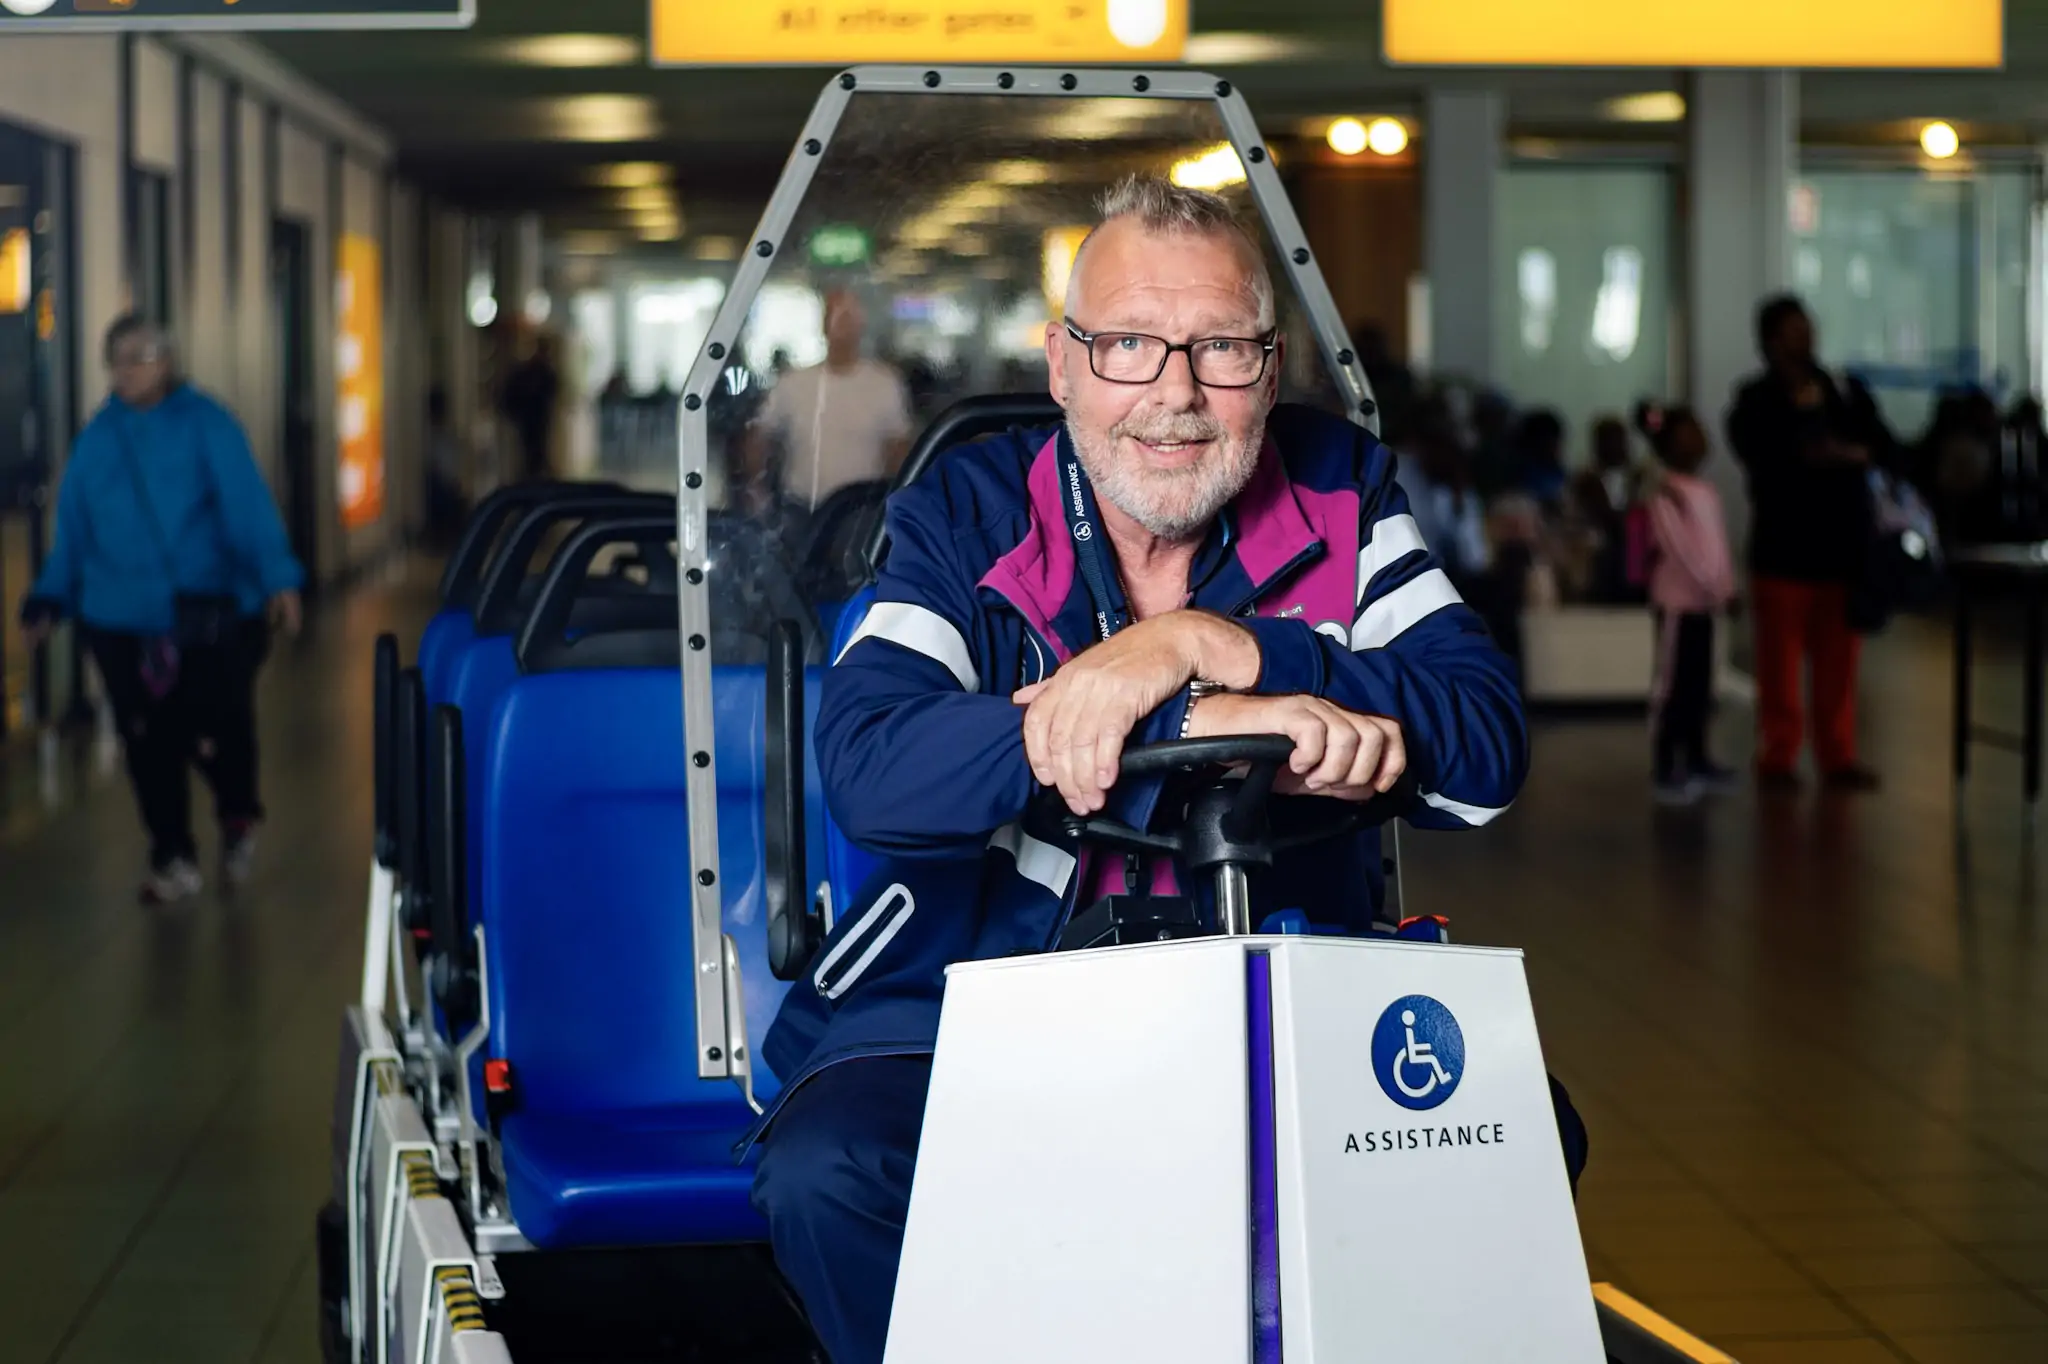 Medewerkers van Axxicom vervoeren passagiers op Schiphol